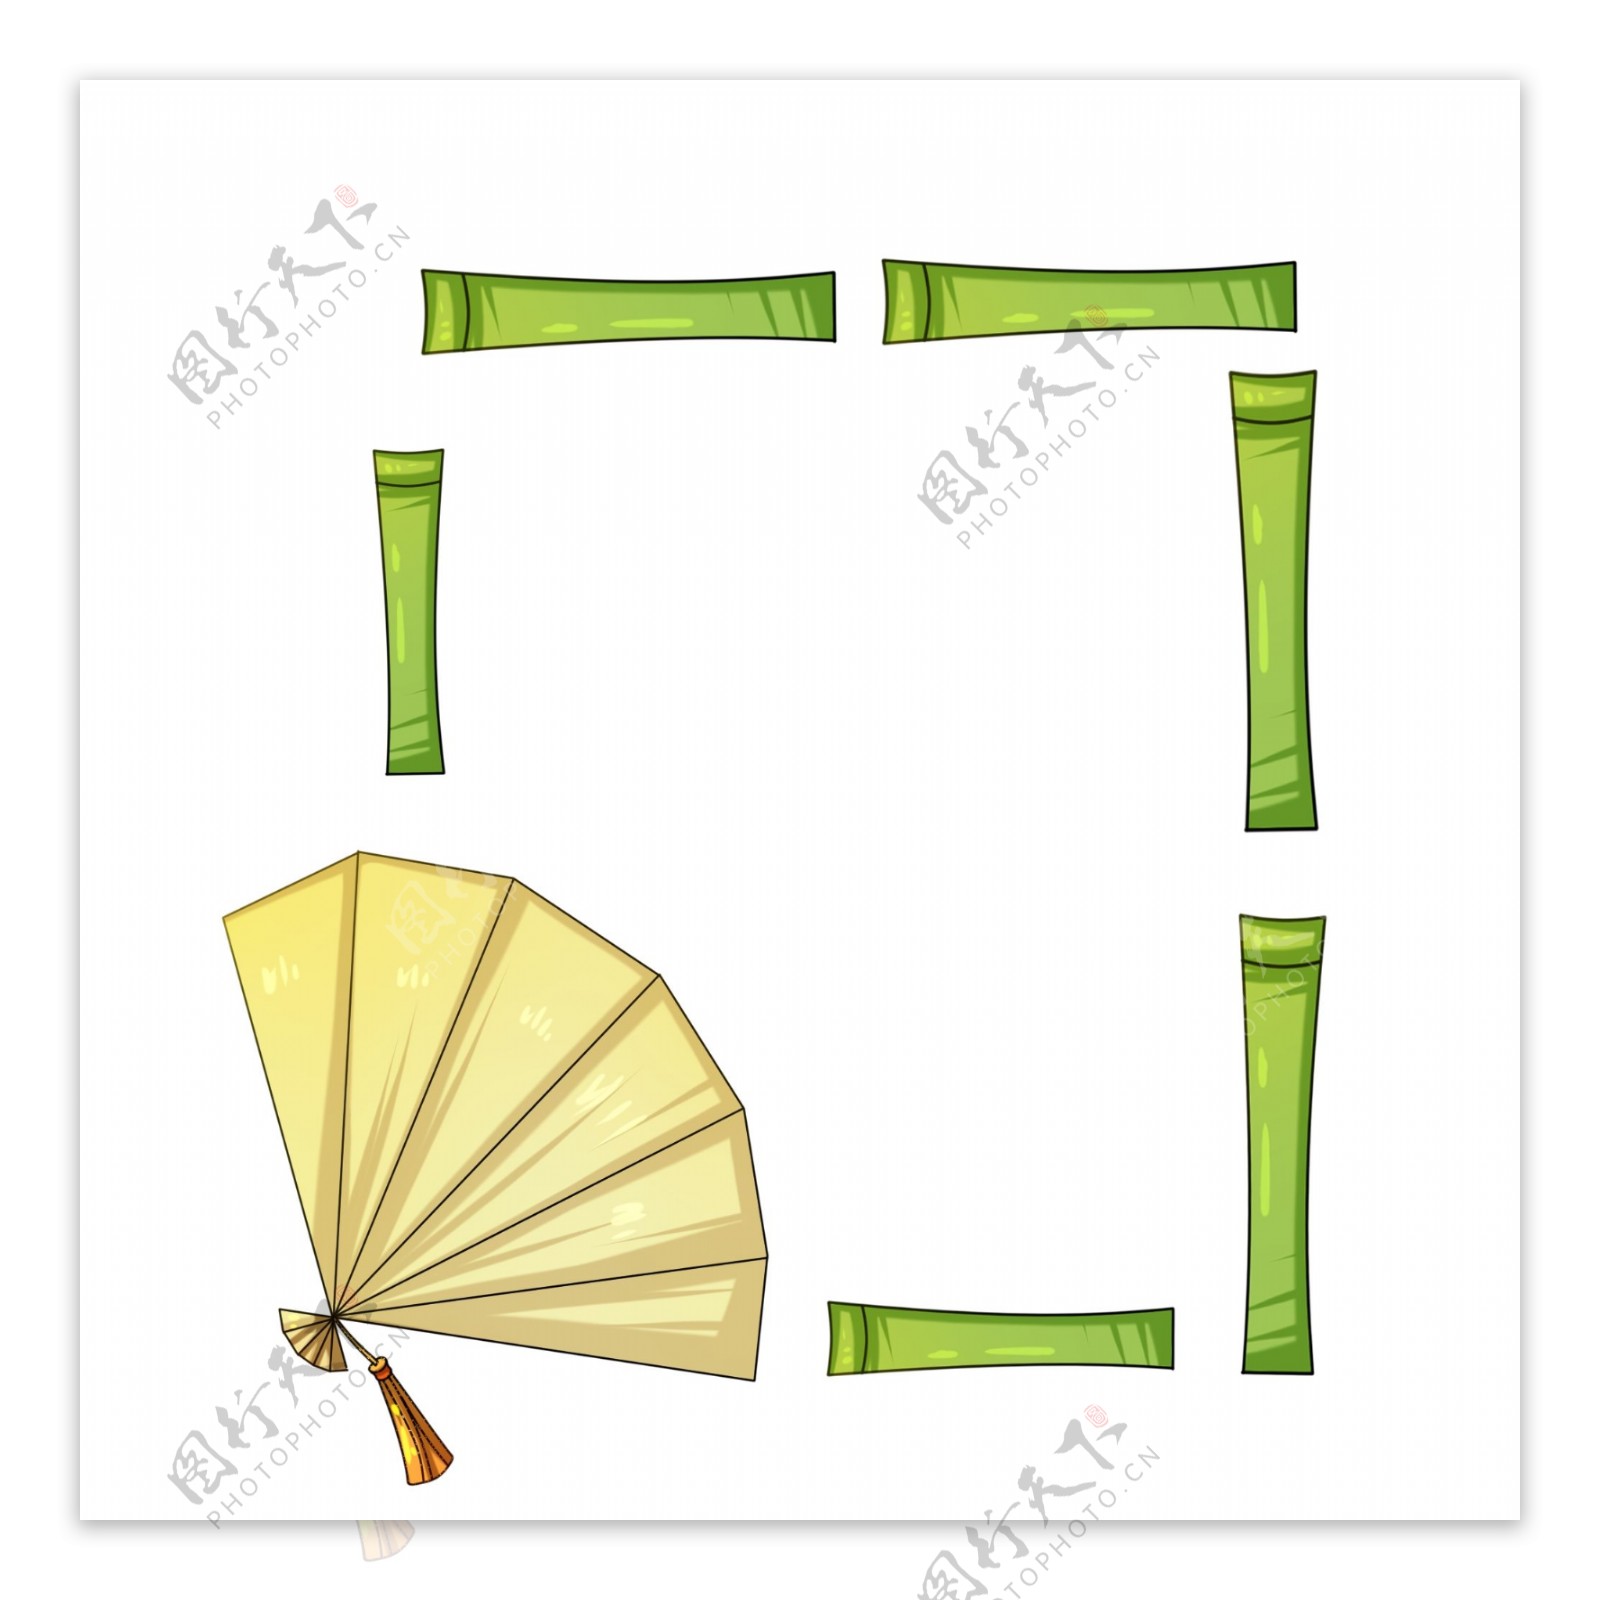 中国风绿色竹子边框